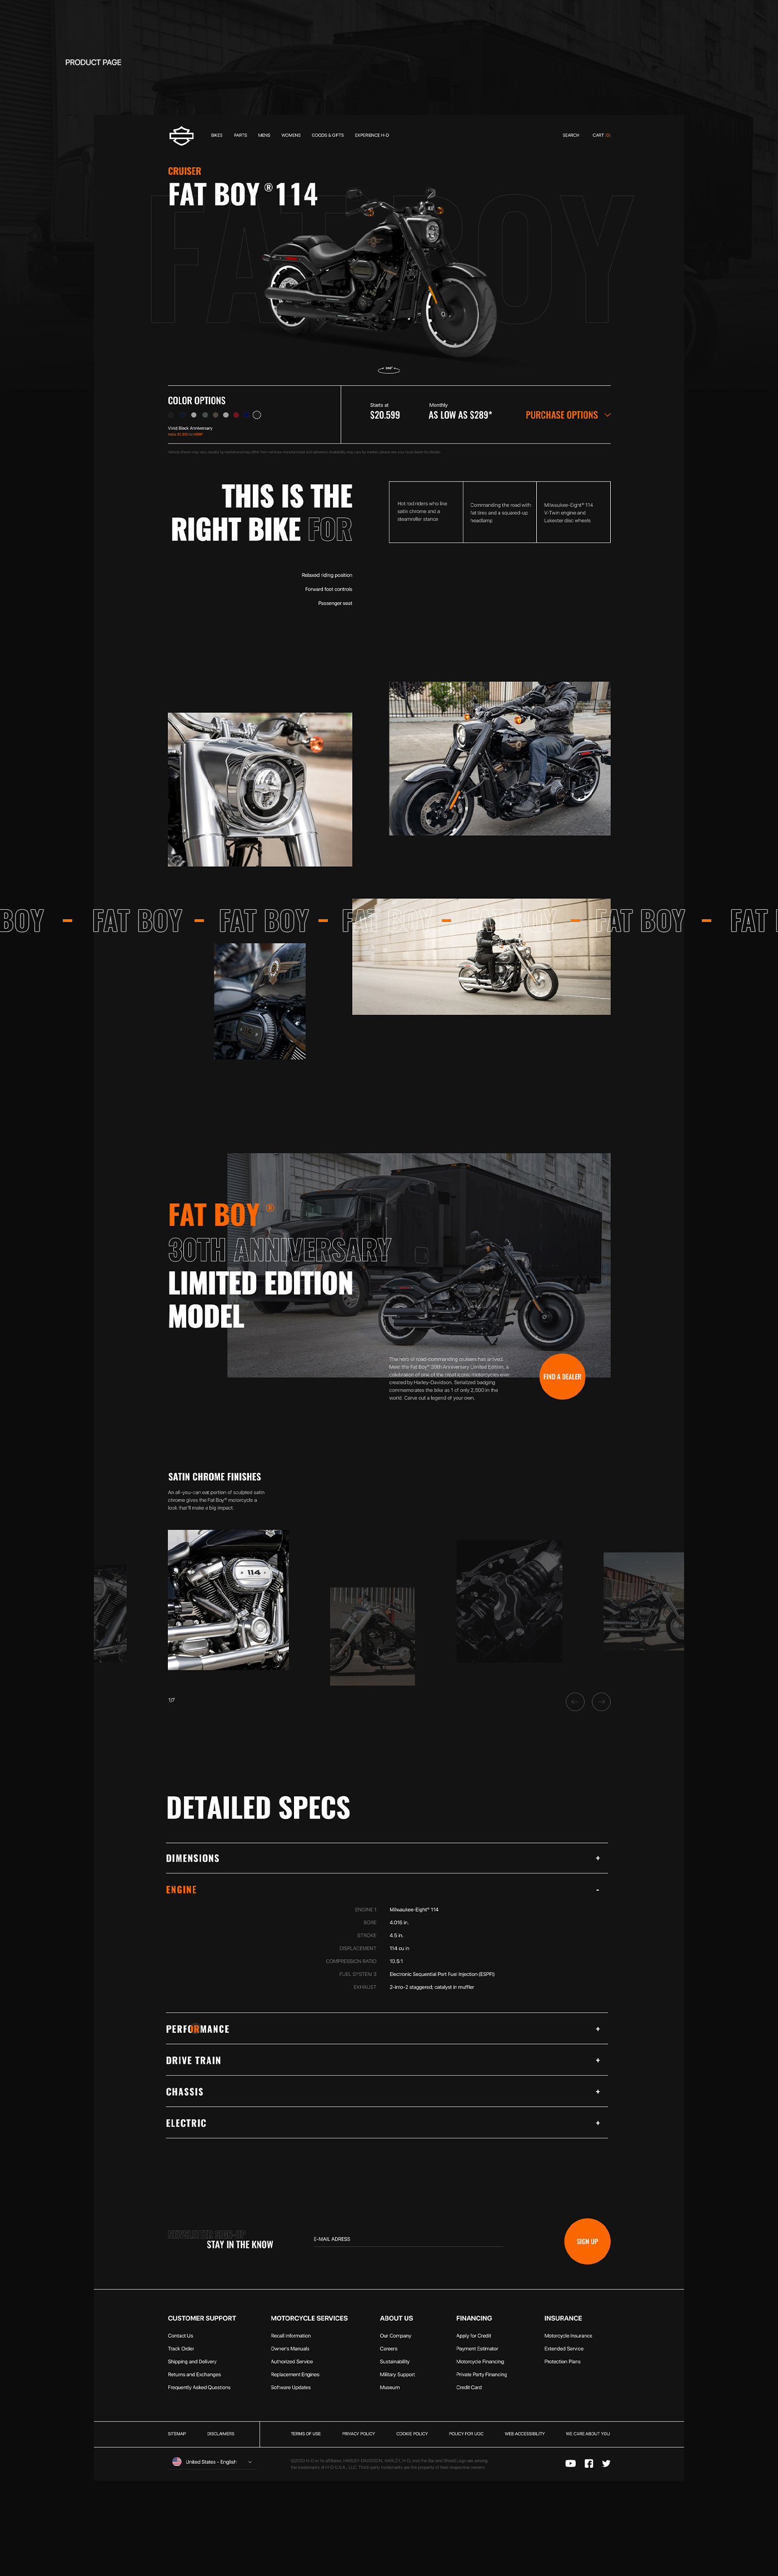 Bike concept Davidson H-D harley Motor motorcycle UI/UX Design Web Design  web page